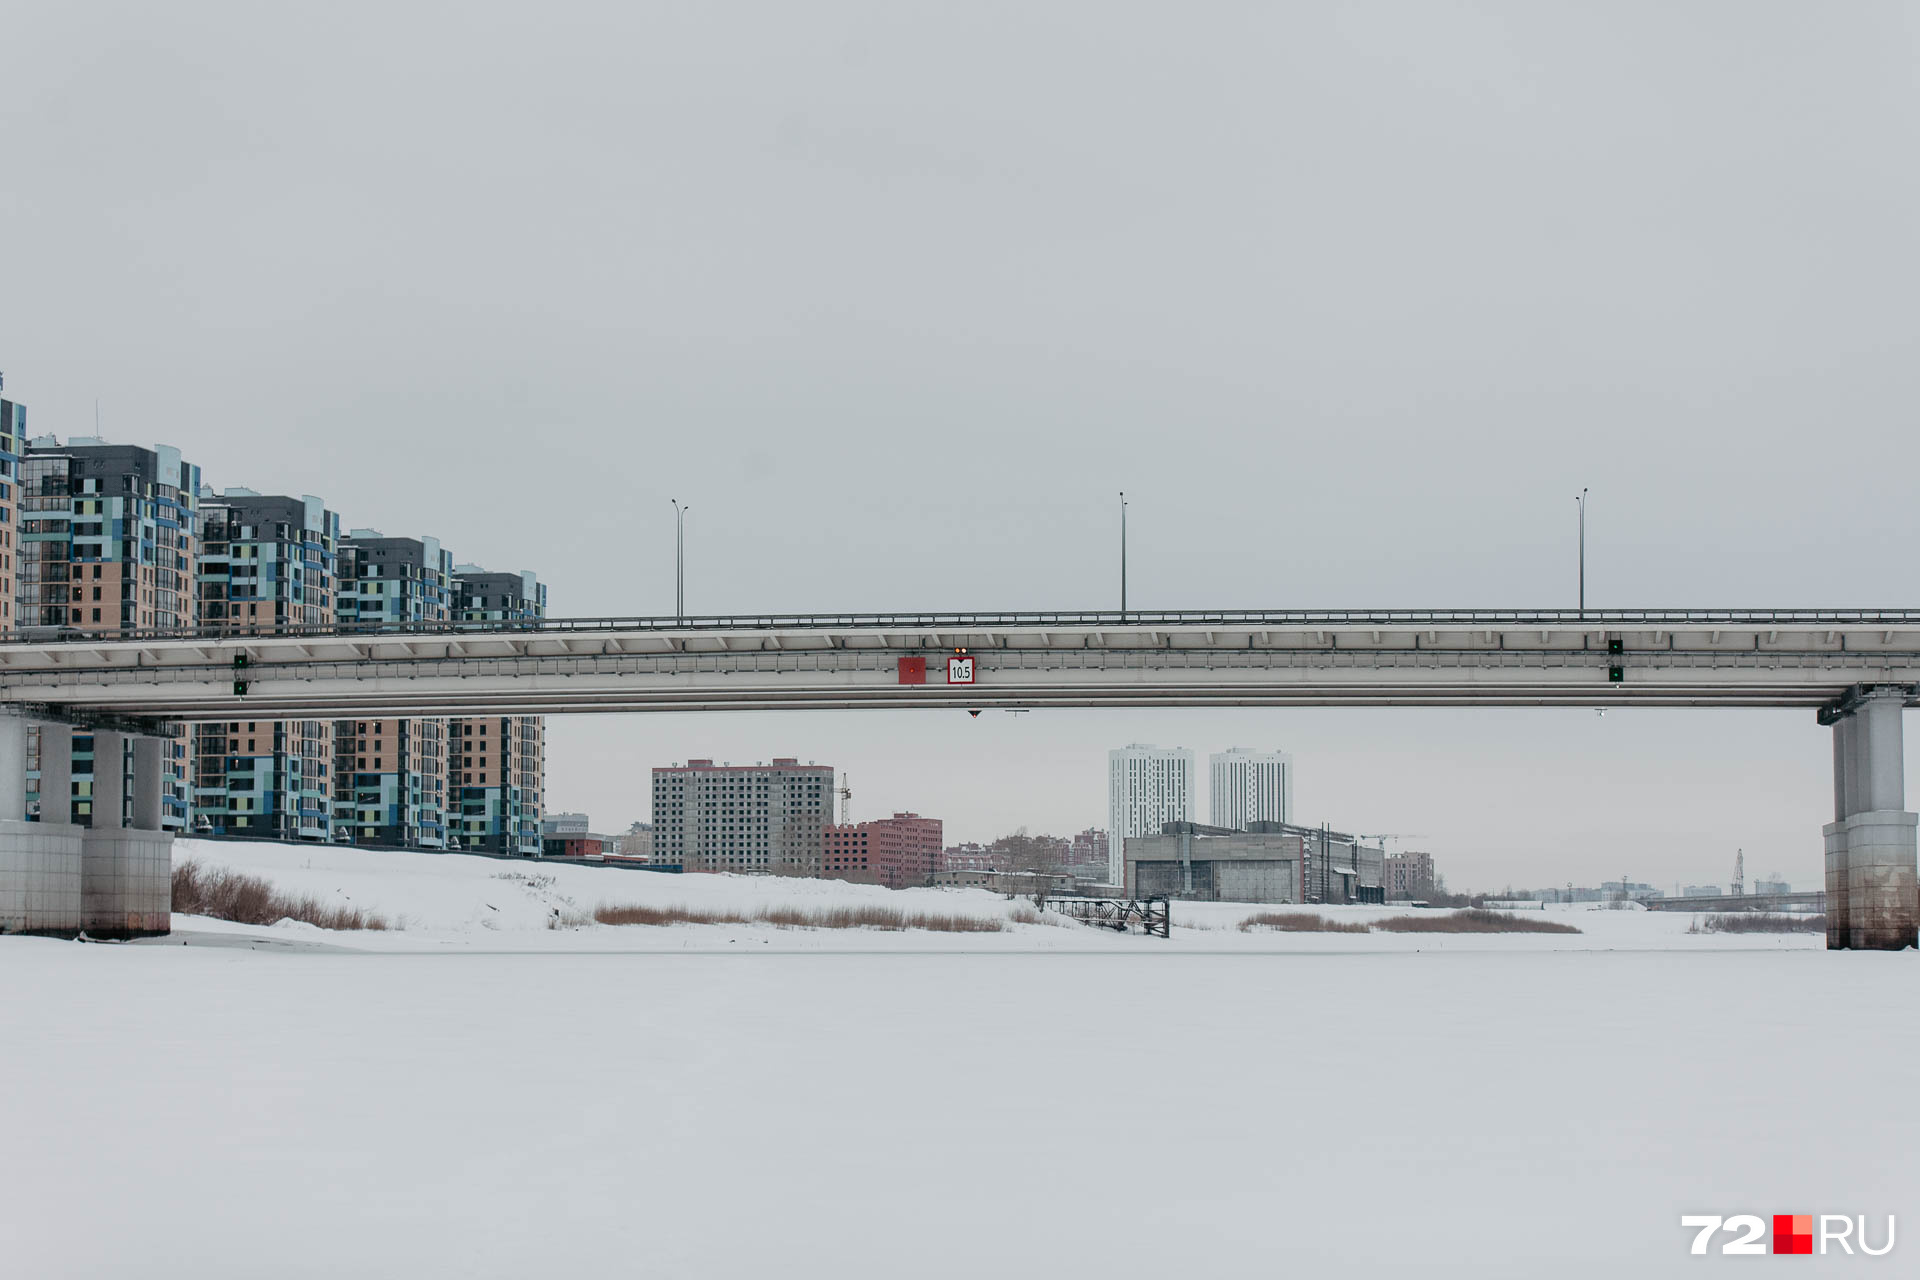 Таким мост Мельникайте можно увидеть только зимой. Ну или летом — с теплохода или катера